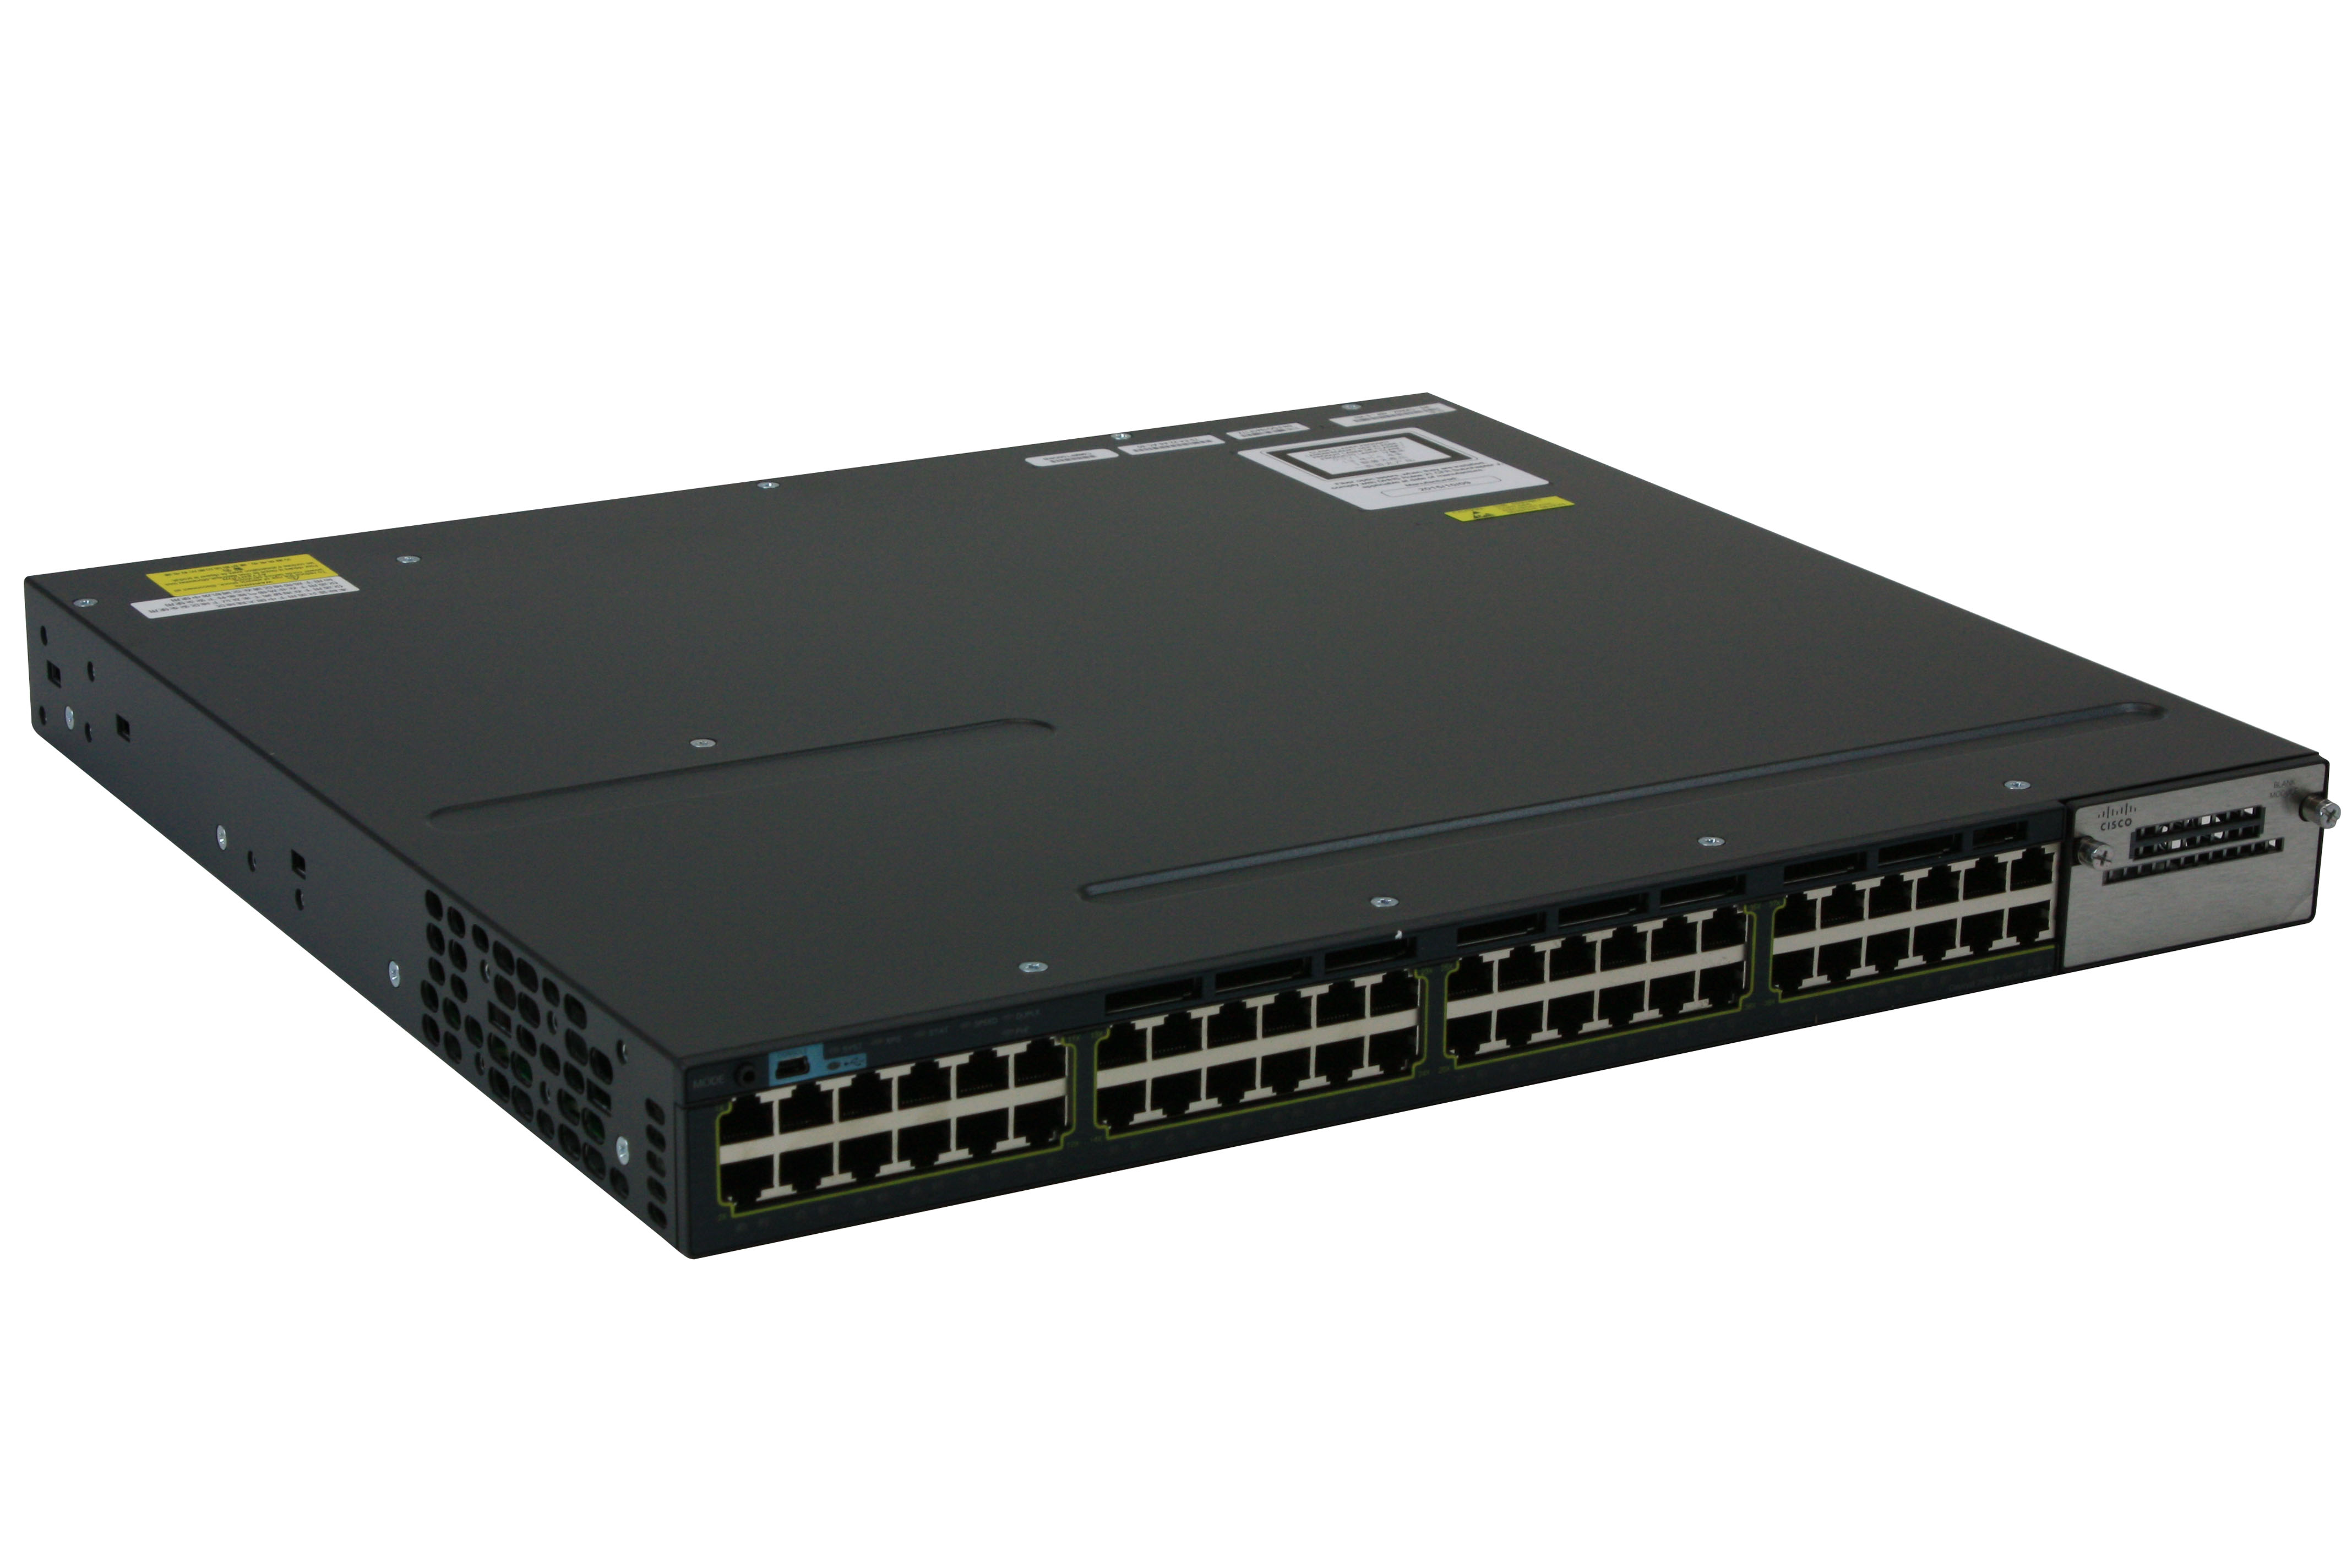 Коммутатор Cisco WS-C3560X-48T-E